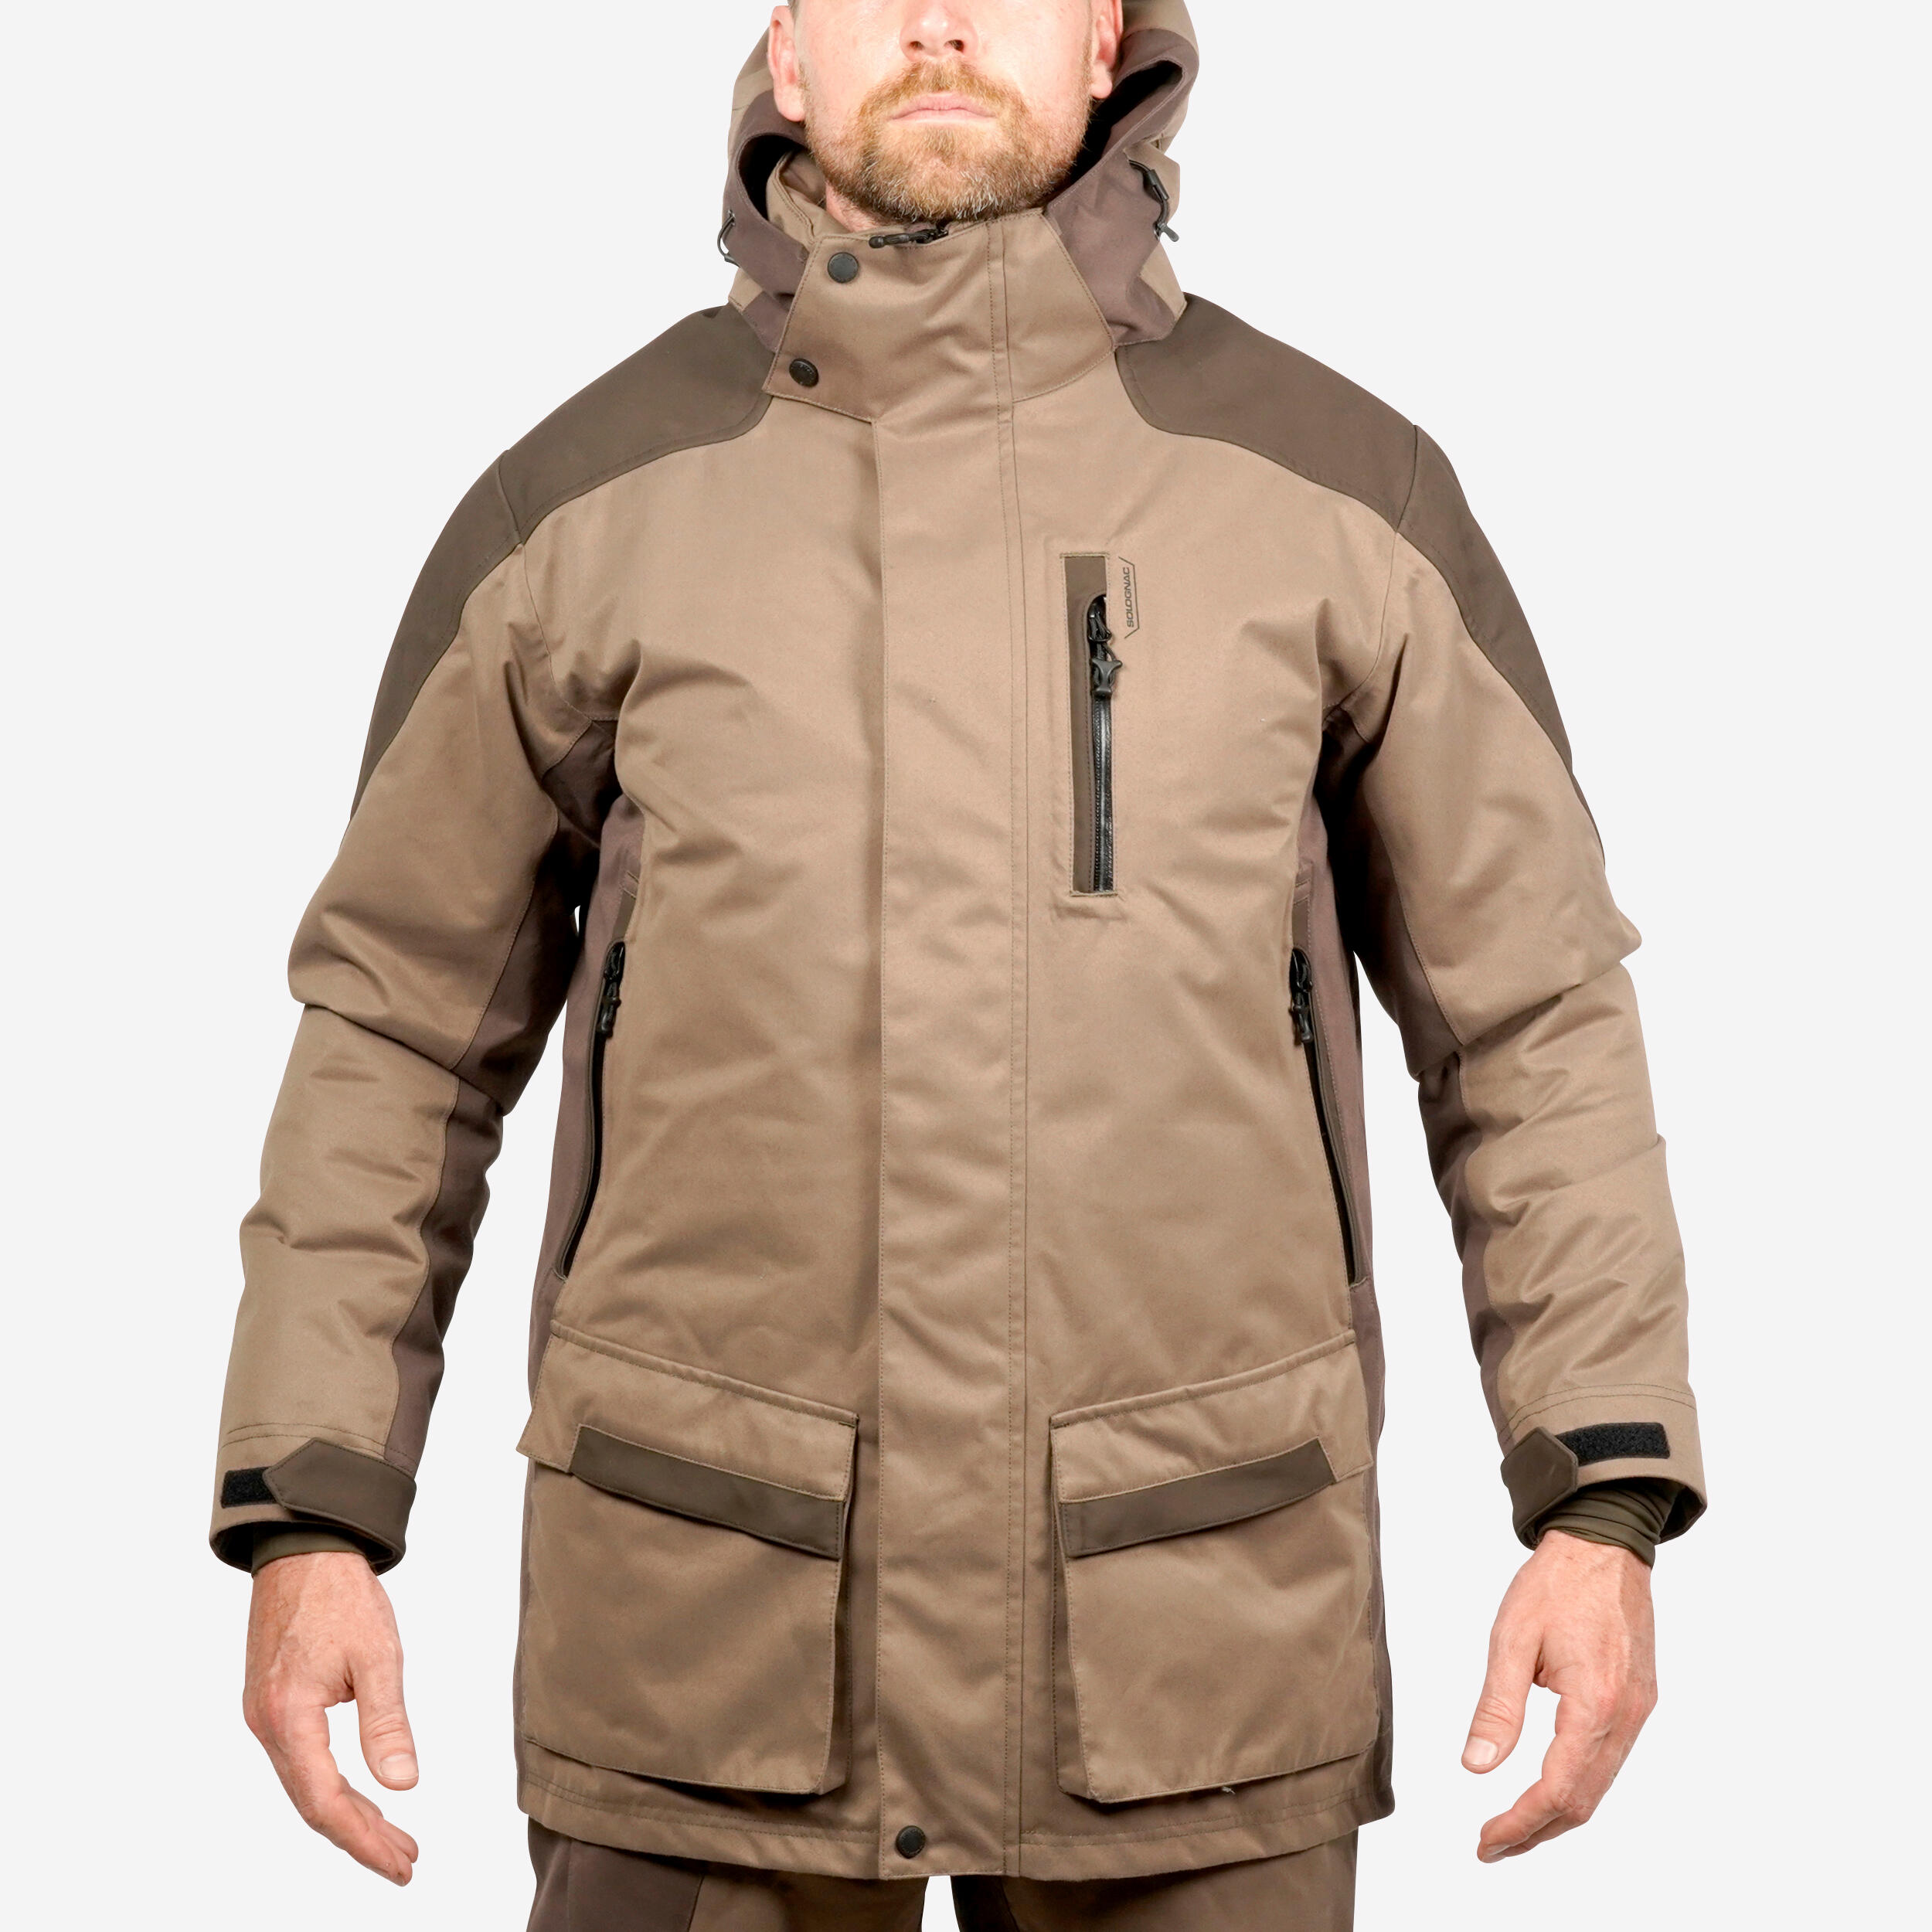 Hunting Jacket Warm Silent Waterproof - 520 Brown - SOLOGNAC